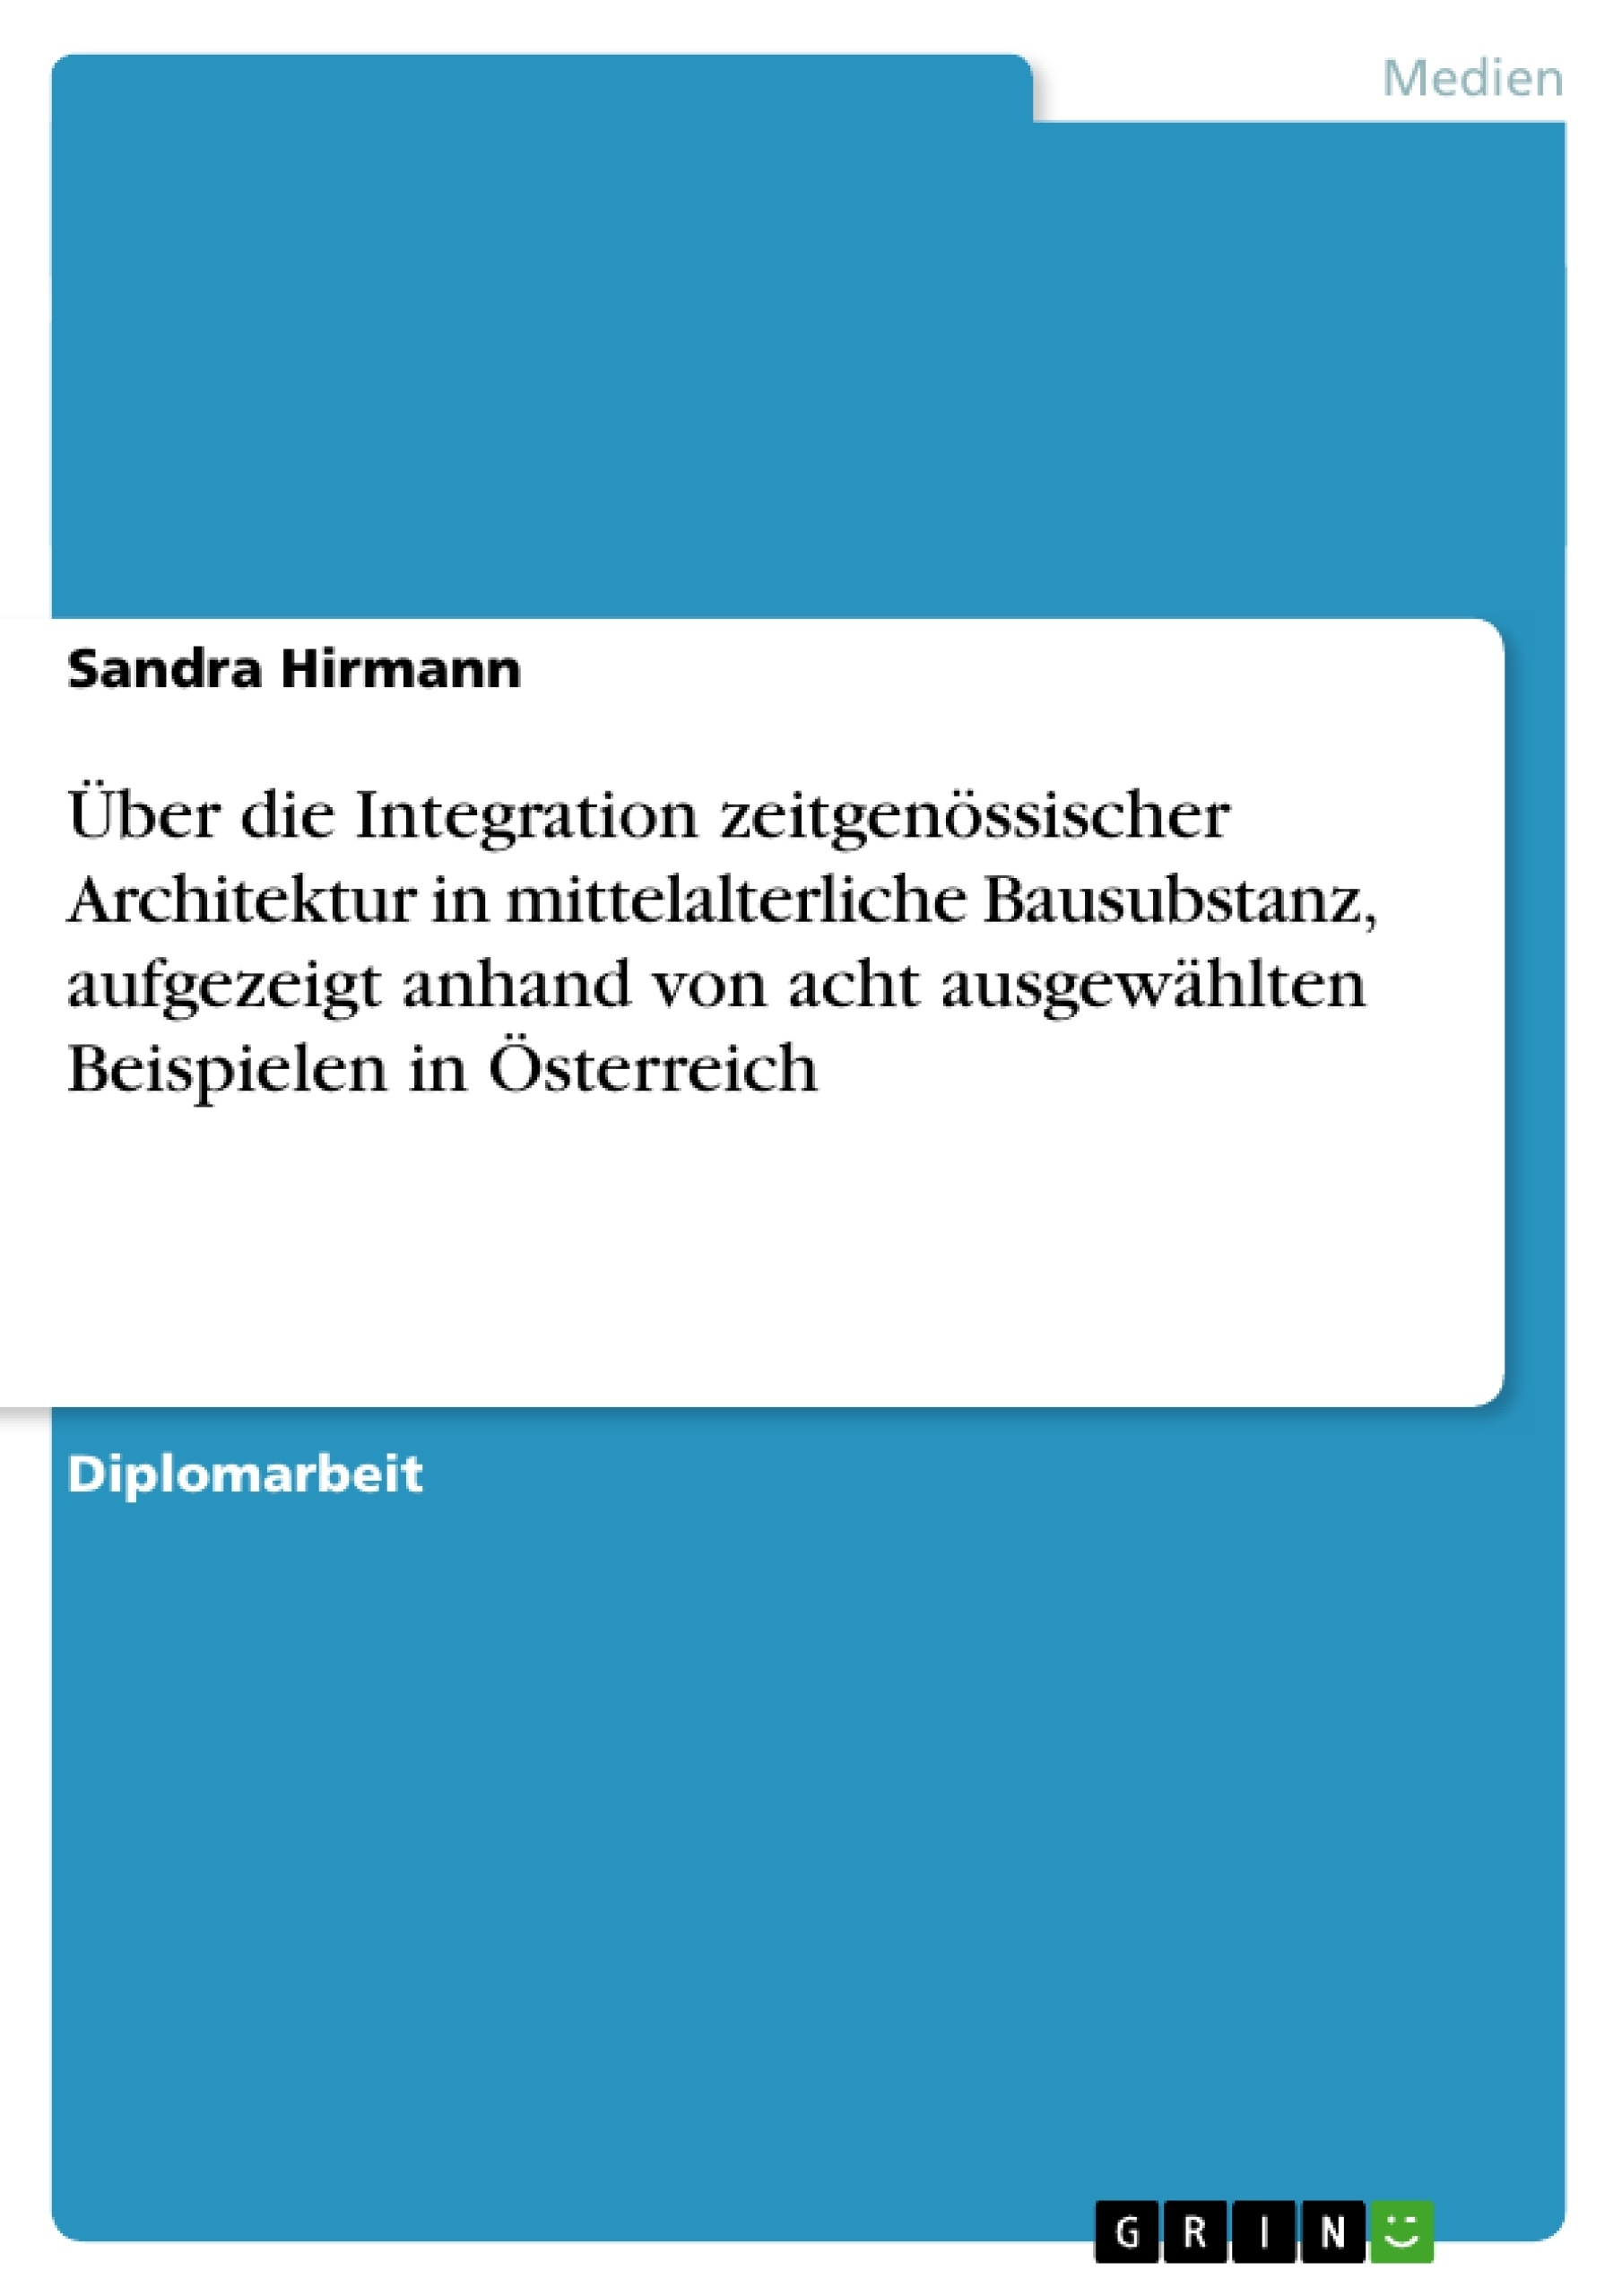 Título: Über die Integration zeitgenössischer Architektur in mittelalterliche Bausubstanz, aufgezeigt anhand von acht ausgewählten Beispielen in Österreich 